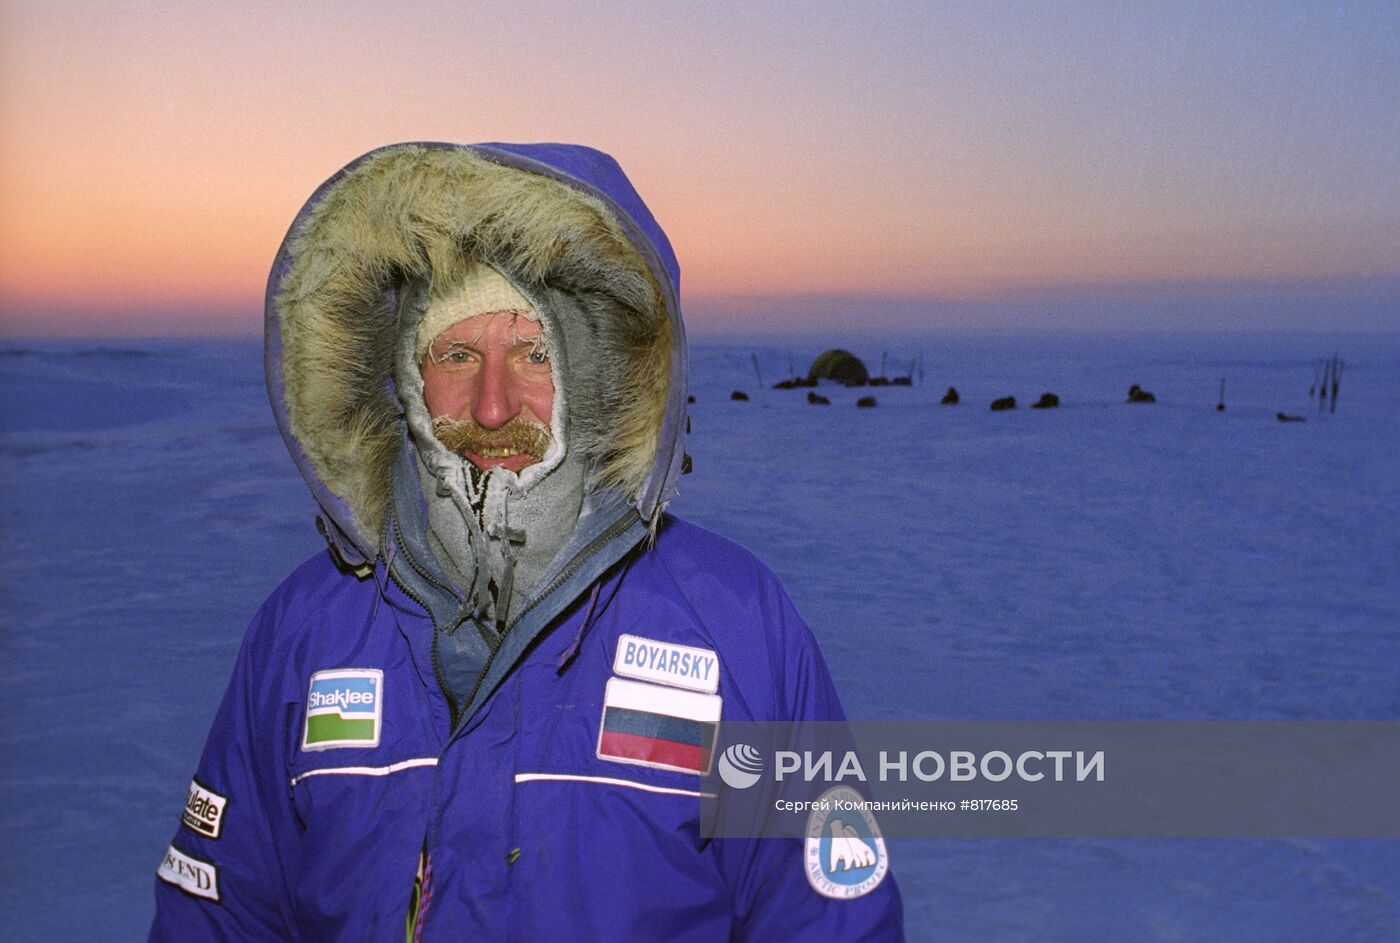 Международная трансарктическая экспедиция "Твинпол-95"